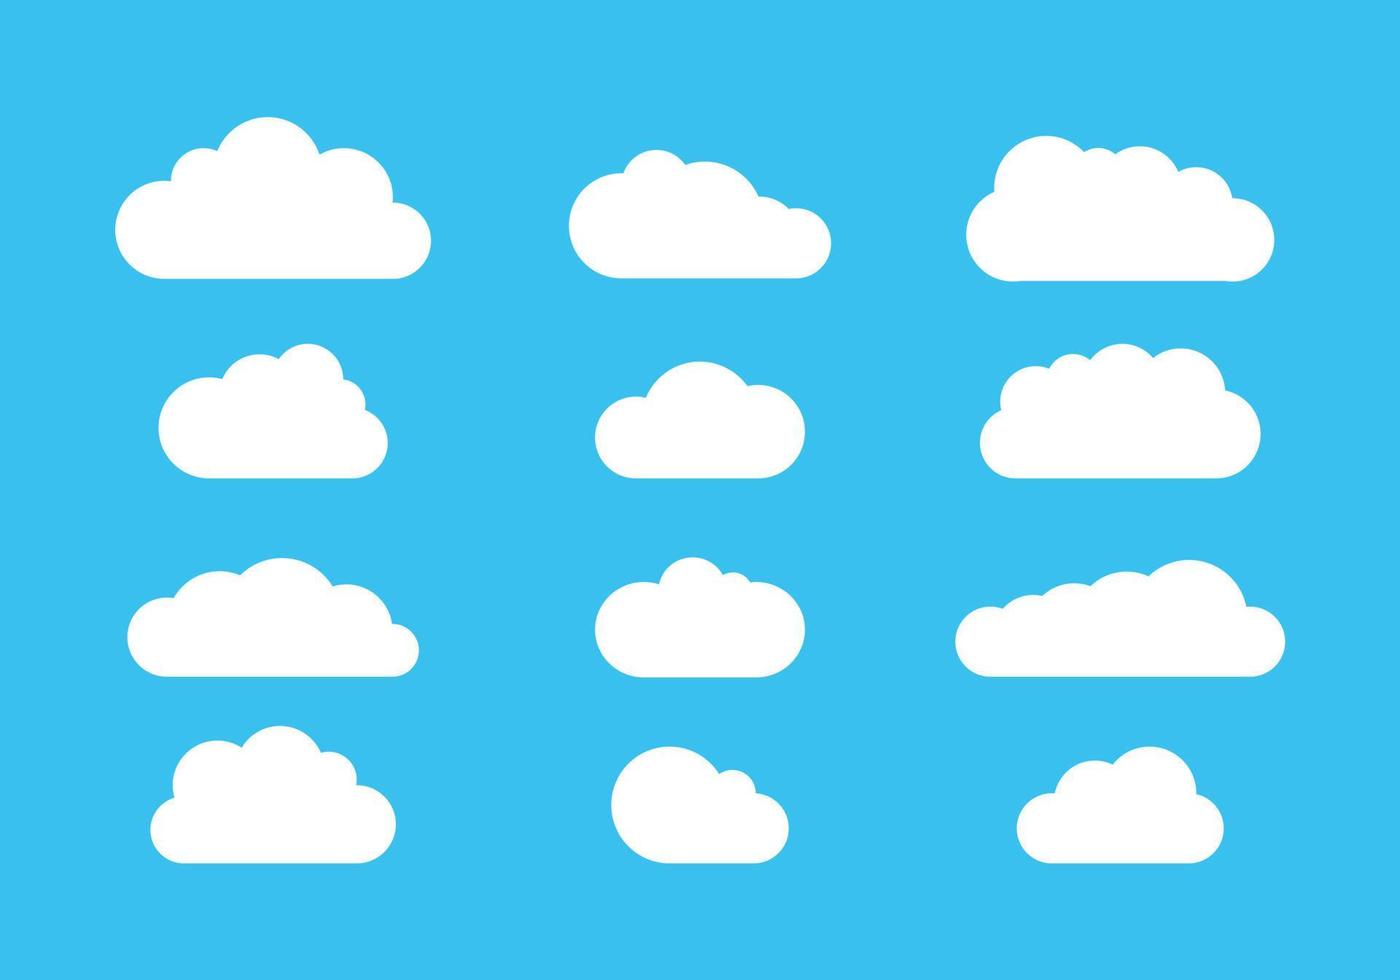 vecteur d'icônes de nuage, conception nuageuse blanche plate sur fond bleu